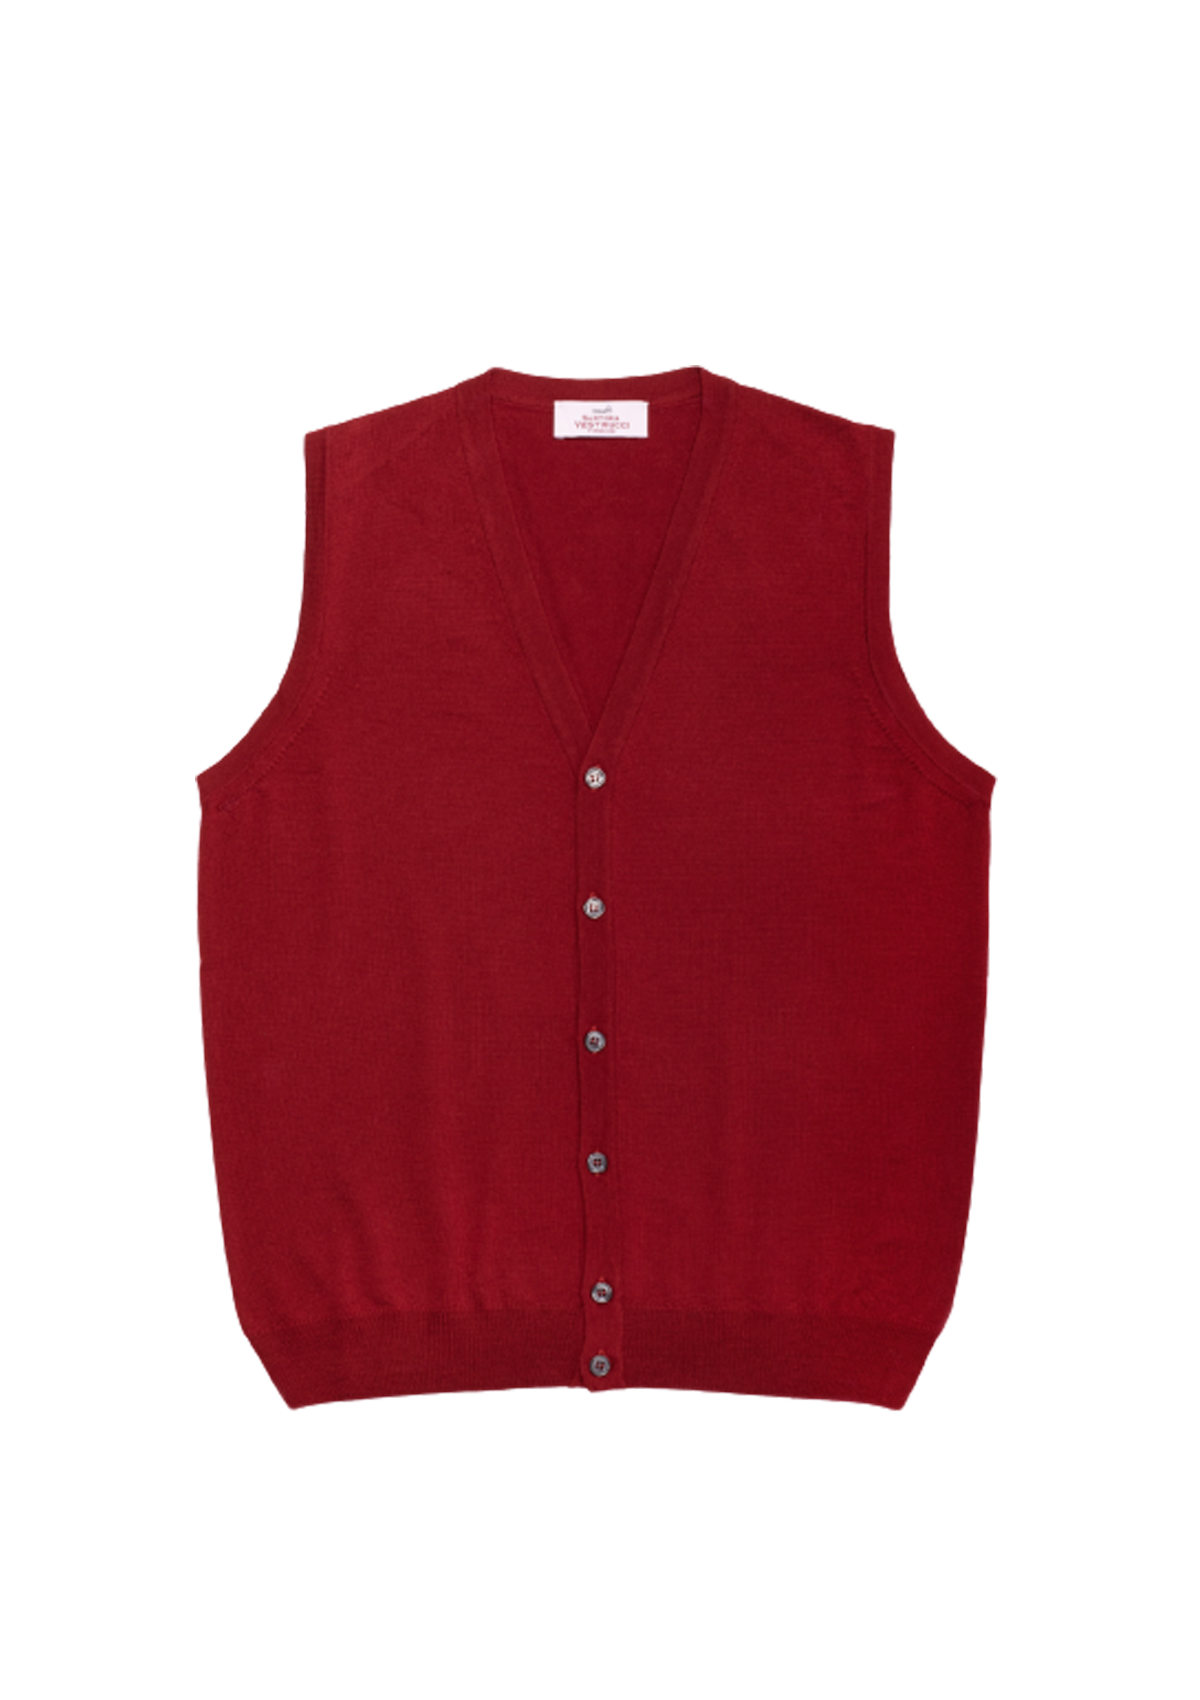 Cardinal Red Merino Wool Waistcoat